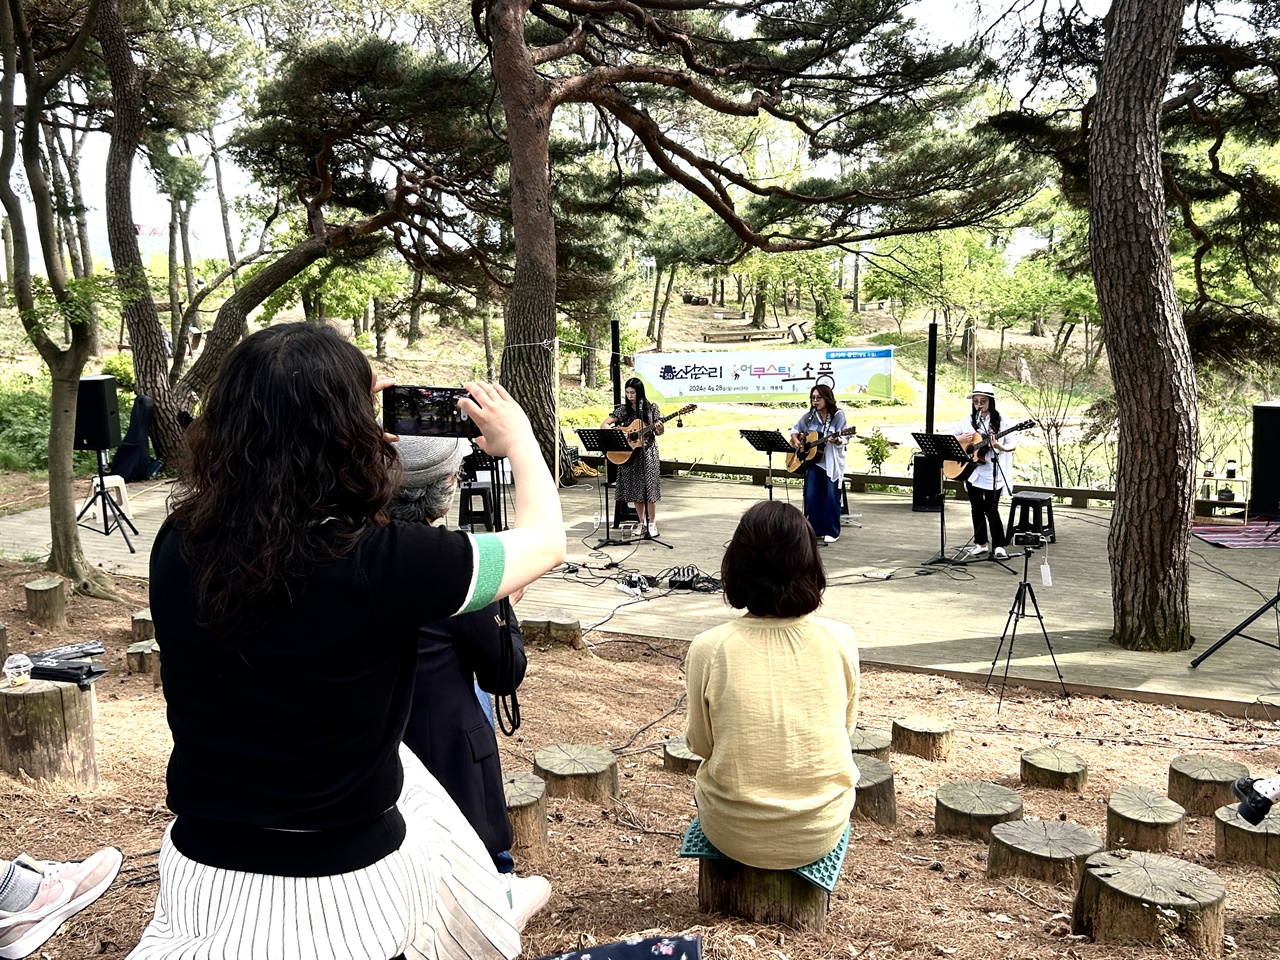 28일 오후 홍성지역 어쿠스틱 통기타 동아리 ‘소담소리’는 ‘봄 소풍’이라는 주제로 매봉재에서 숲속 음악회를 열었다. 한 관광객이 이들의 모습을 카메라에 담고 있다. 